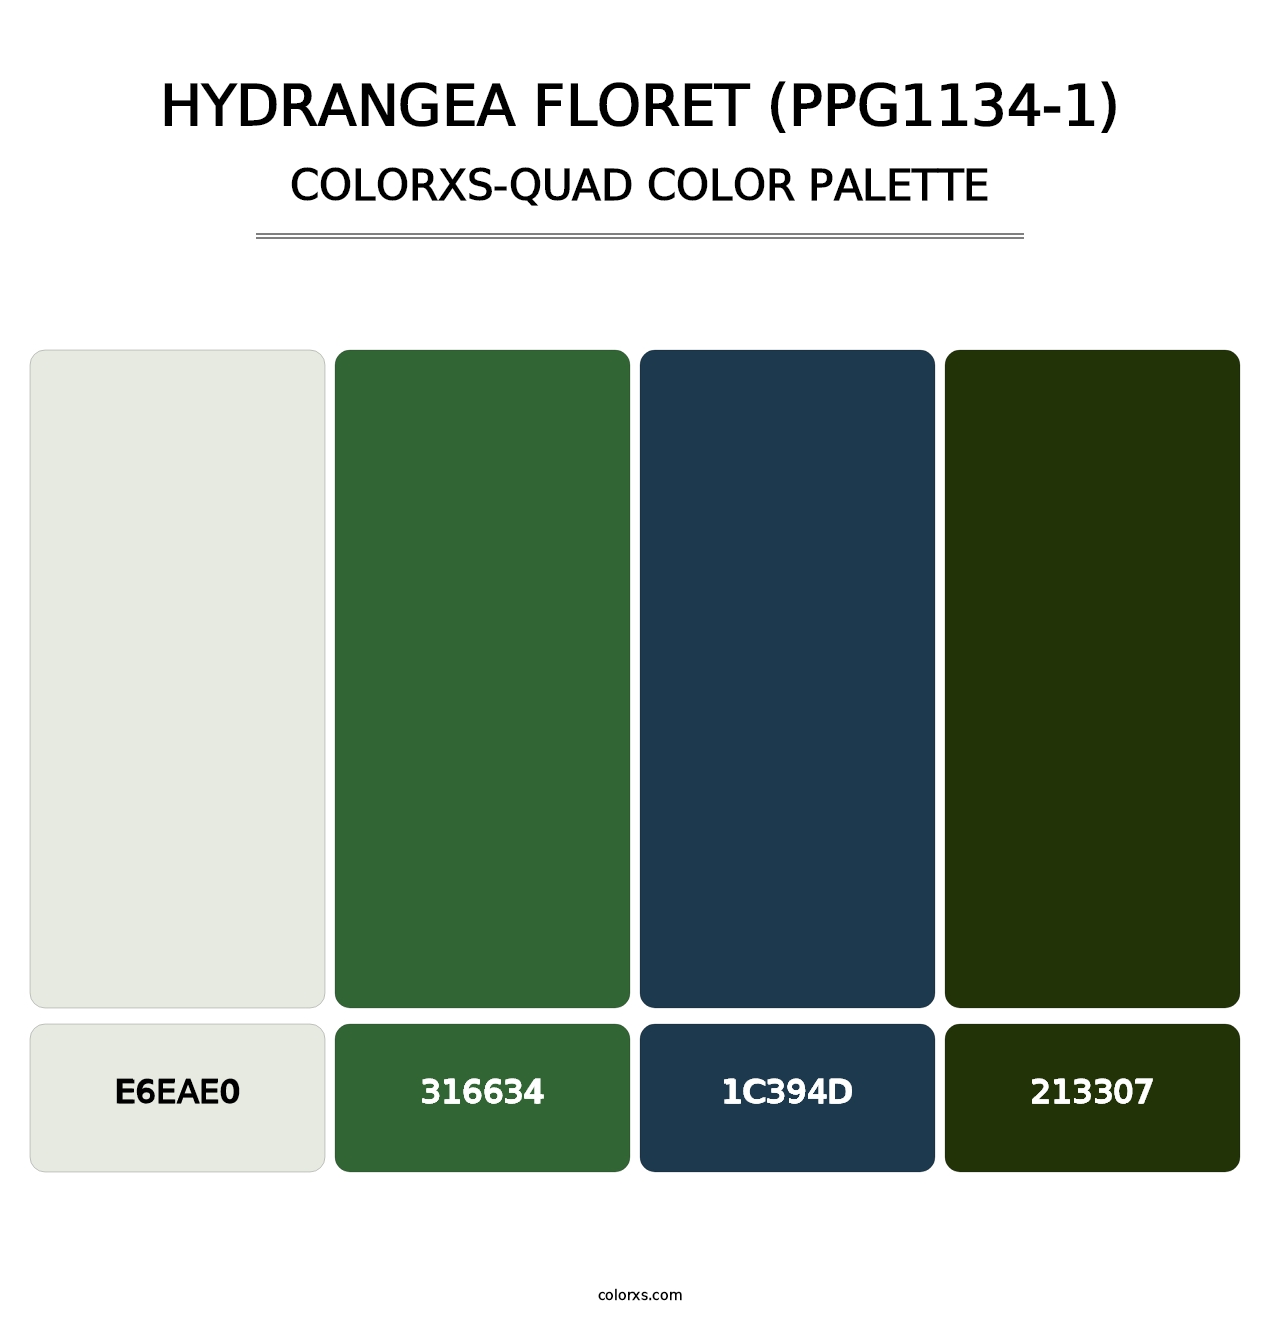 Hydrangea Floret (PPG1134-1) - Colorxs Quad Palette